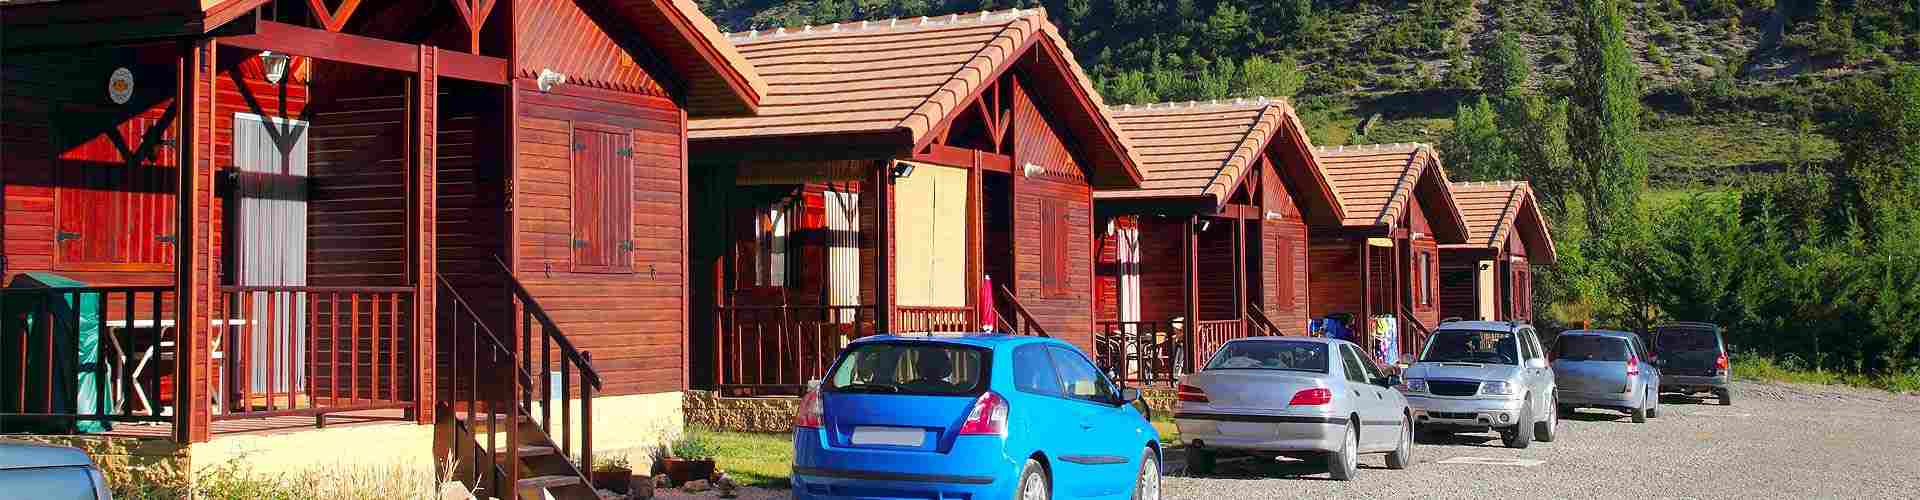 Campings y bungalows en Noceda del Bierzo
           
           


          
          
          


